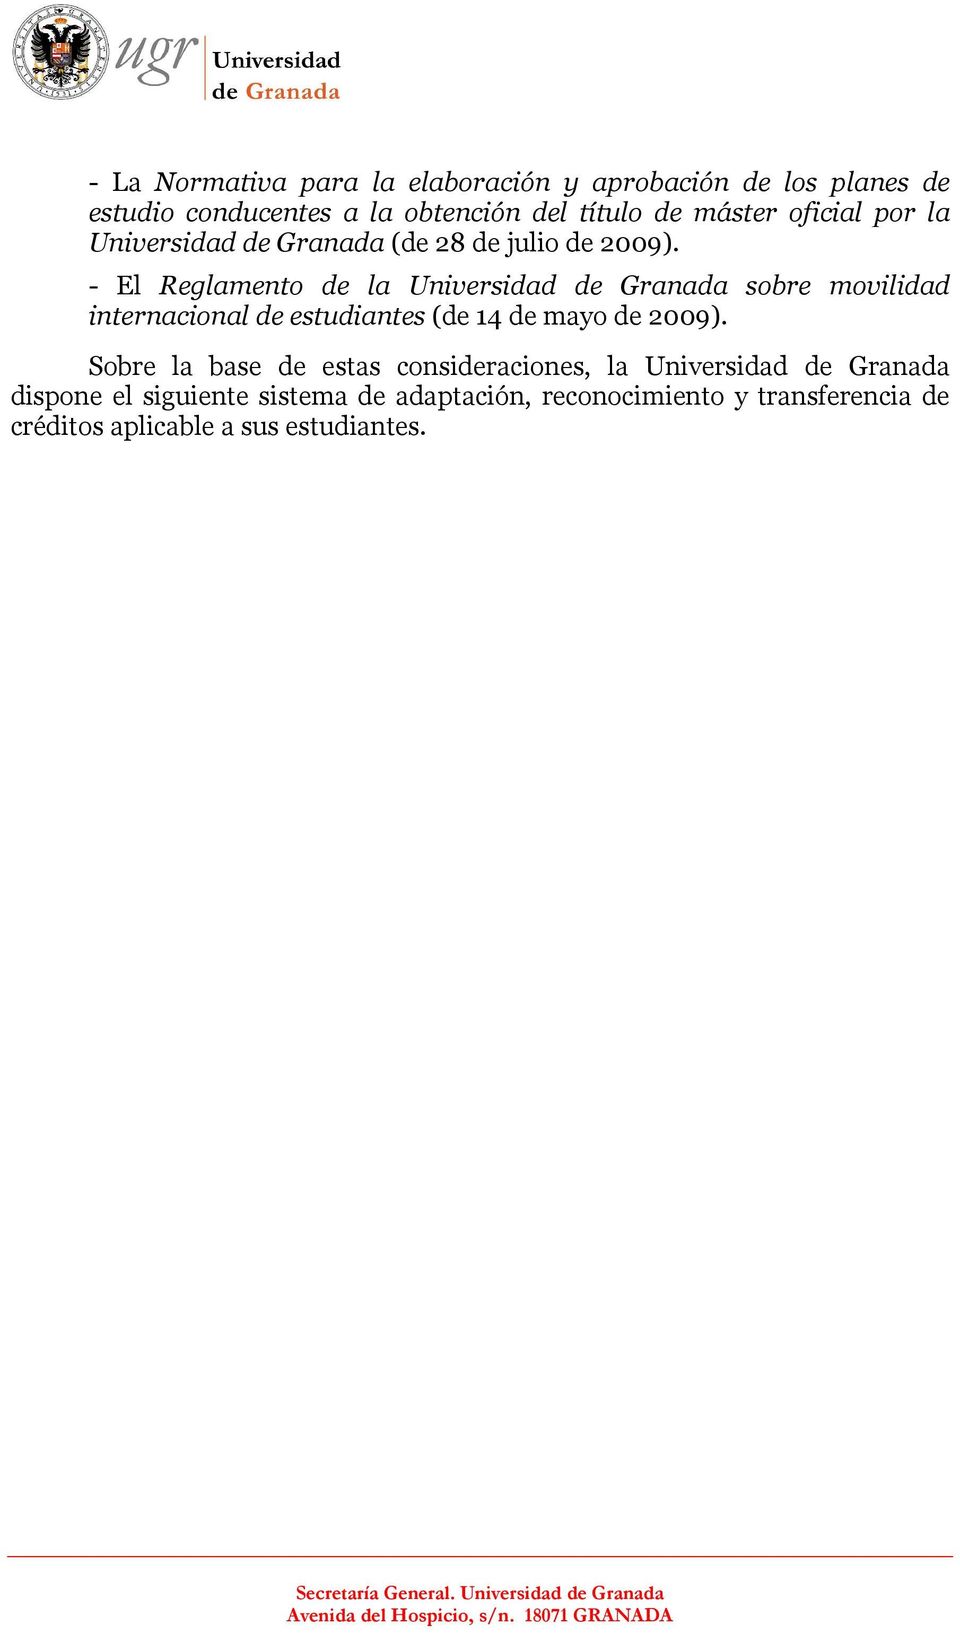 - El Reglamento de la Universidad de Granada sobre movilidad internacional de estudiantes (de 14 de mayo de 2009).